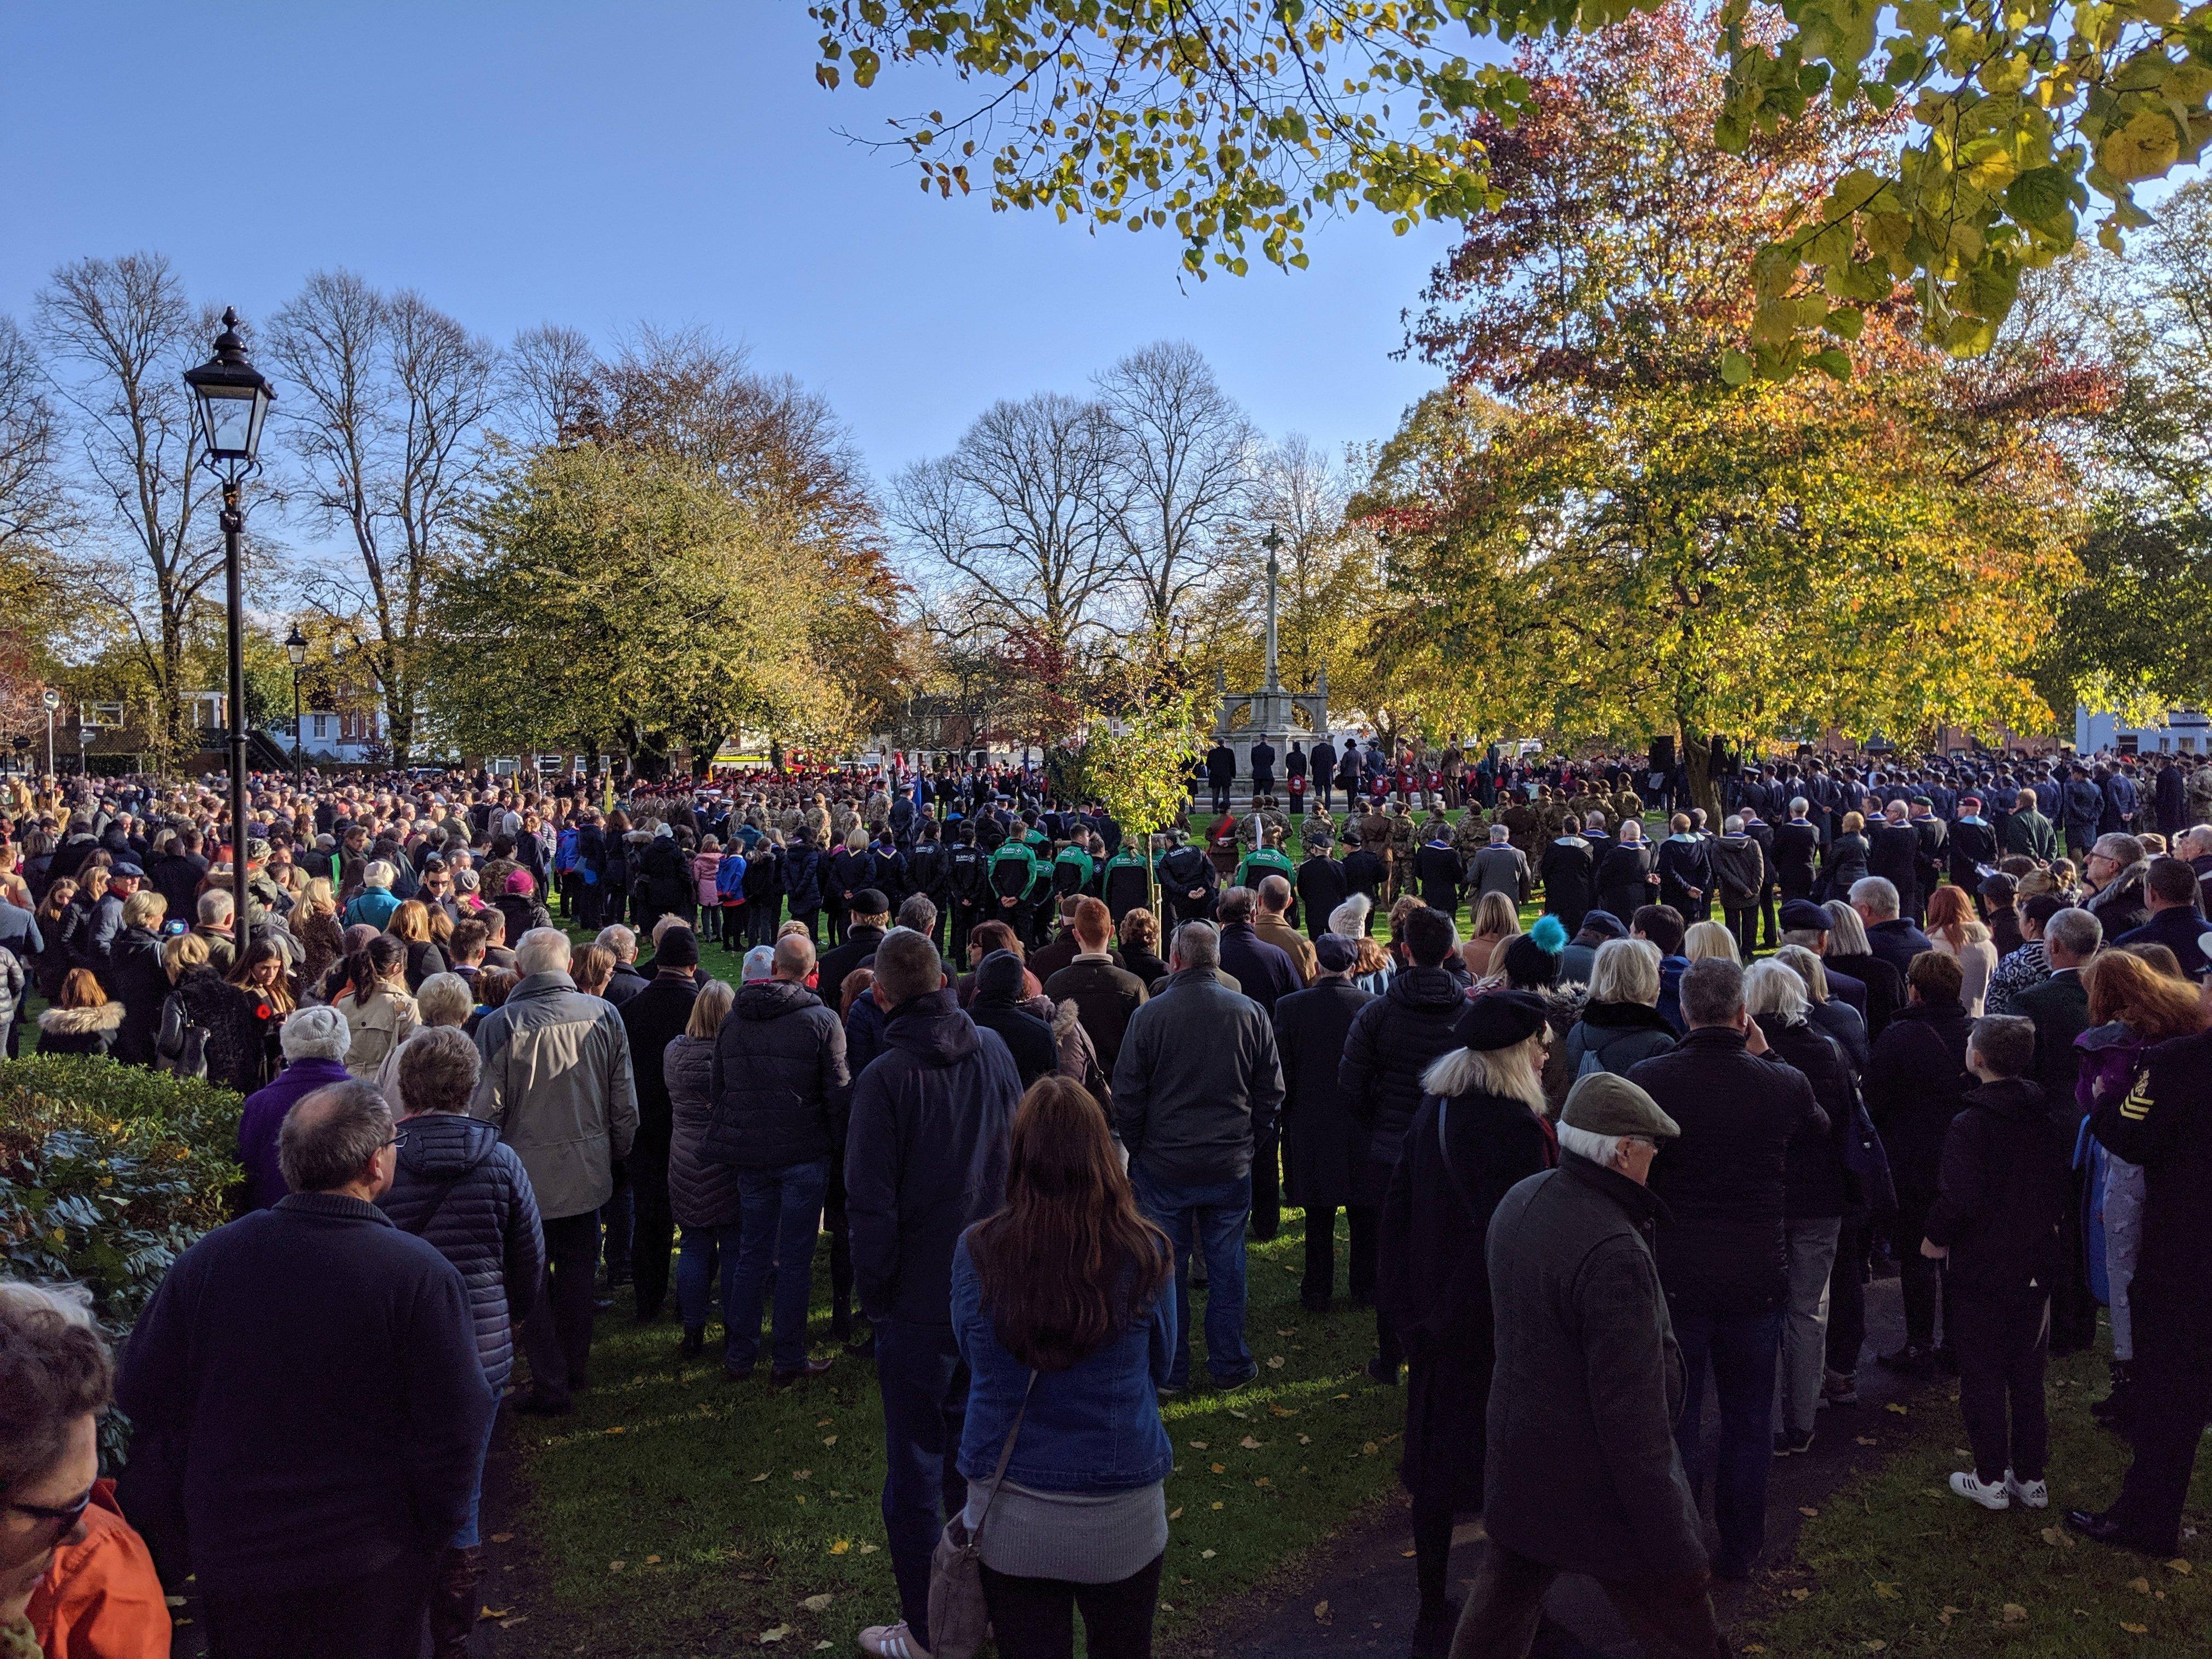 Crowds at Litten Gardens